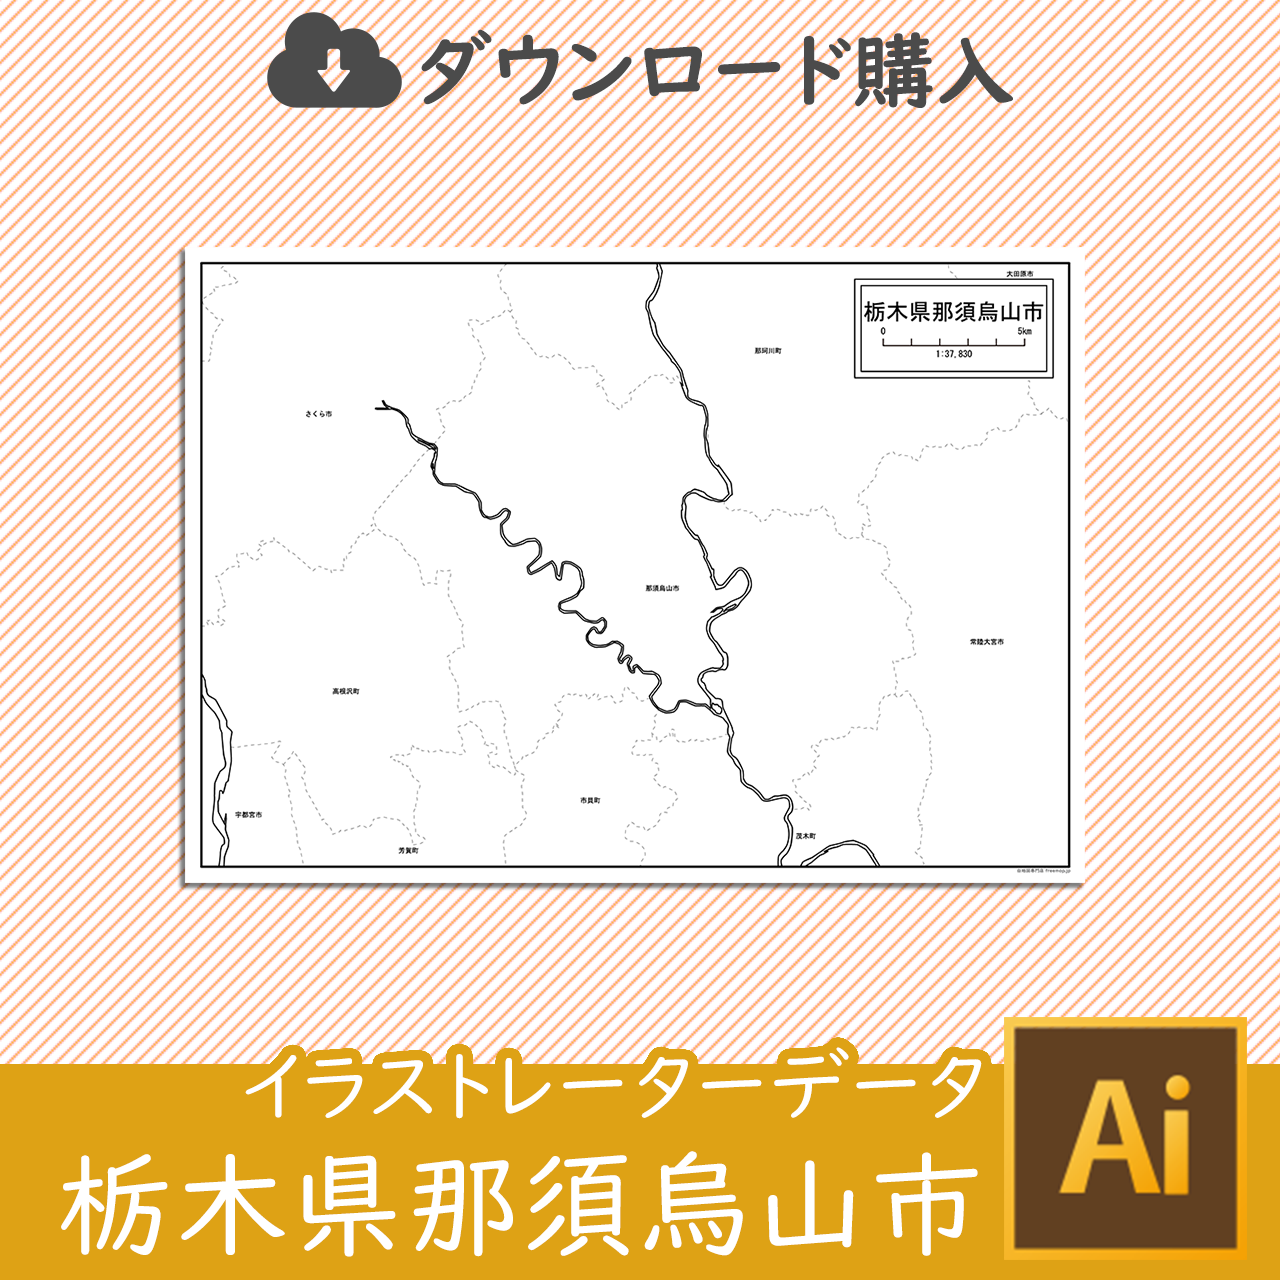 那須烏山市のaiデータのサムネイル画像